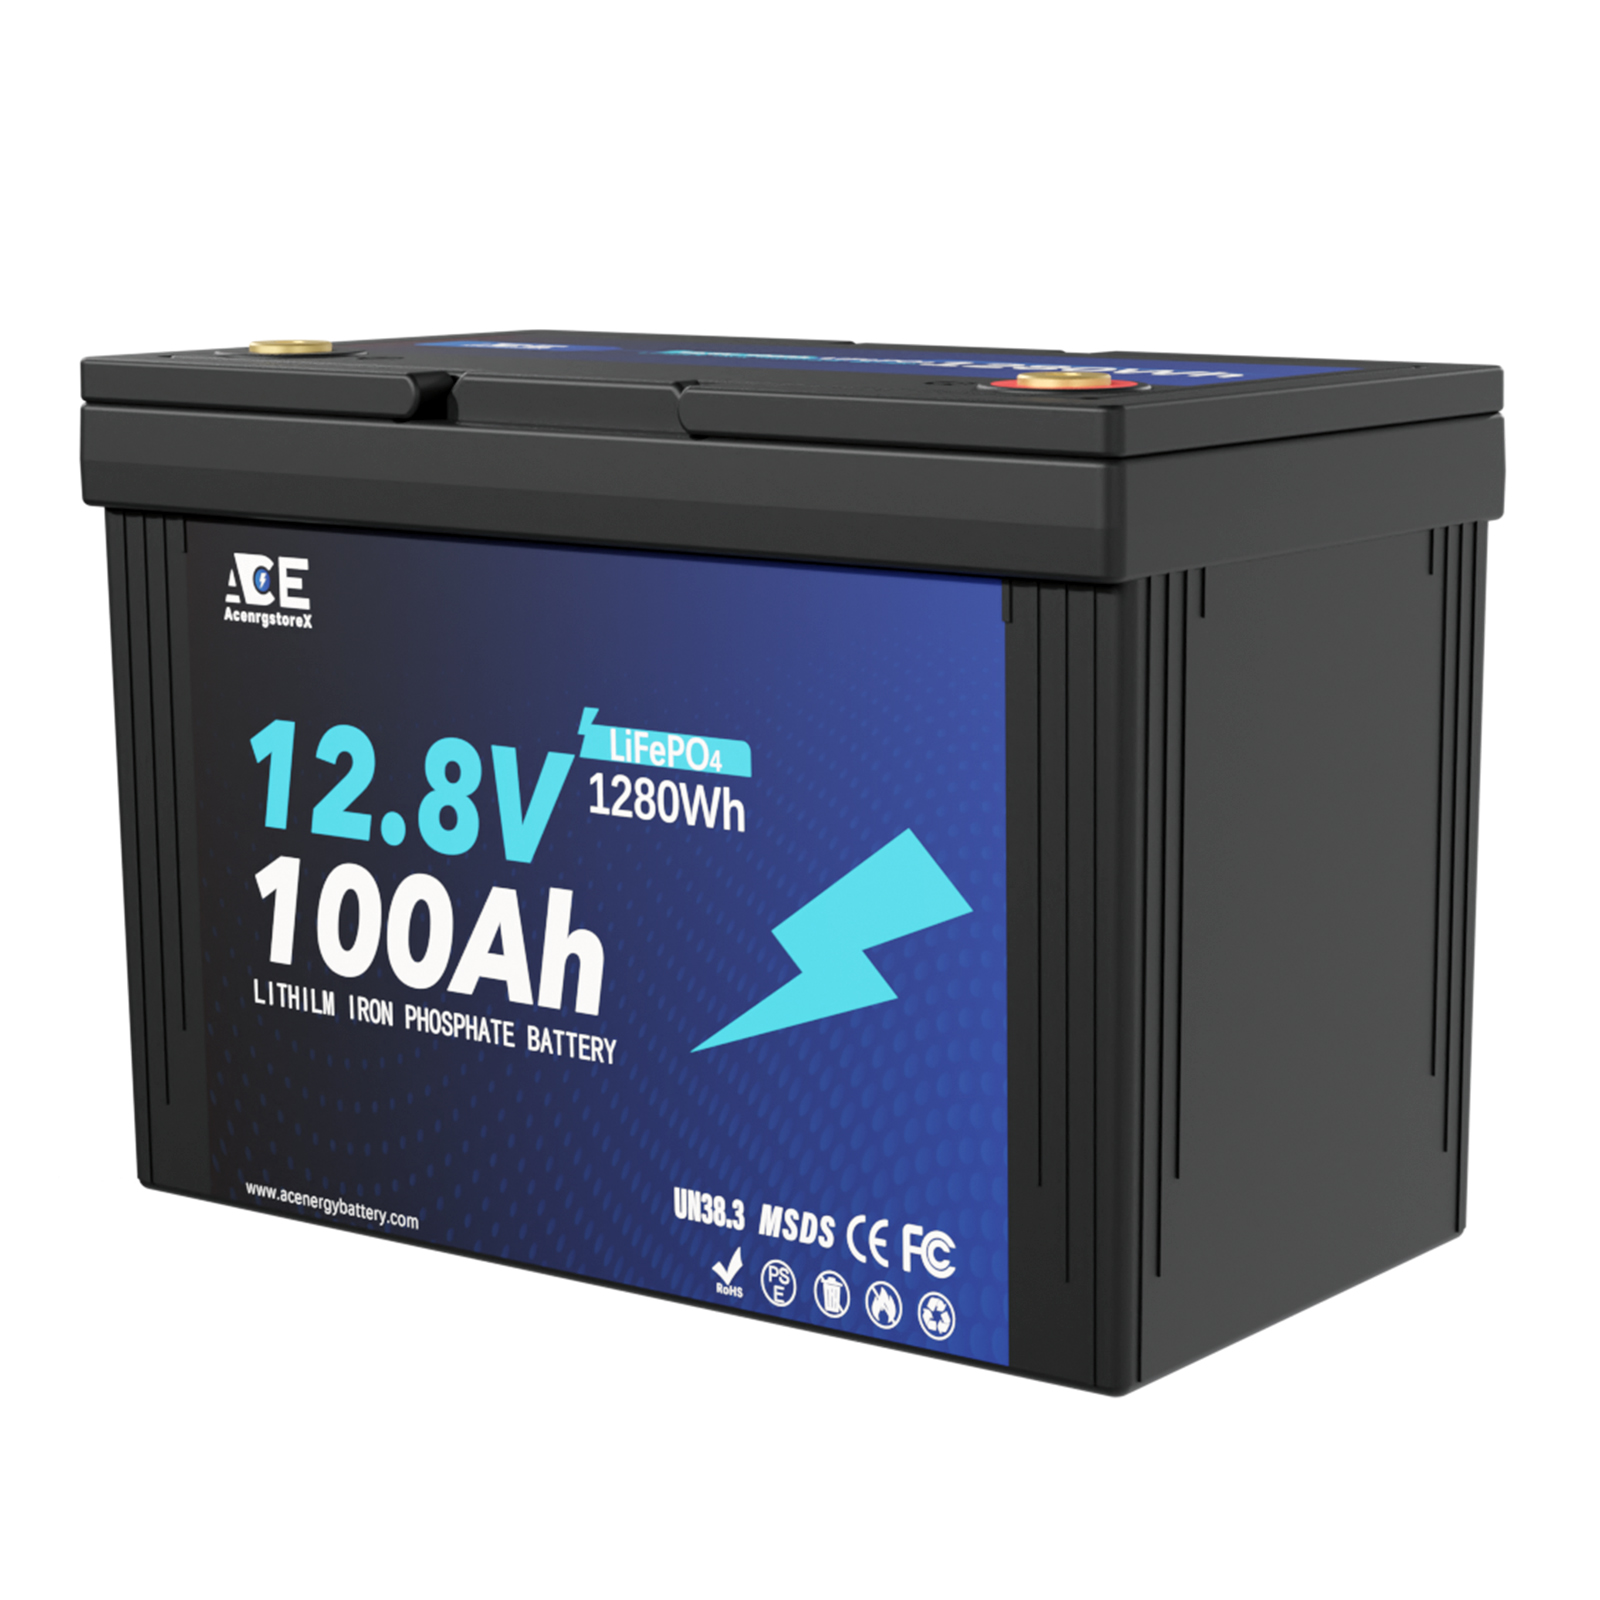 ACEnergy 12V 100Ah Grade-A LiFePO4 Lithium Battery丨100A BMS丨12.8V 1280Wh